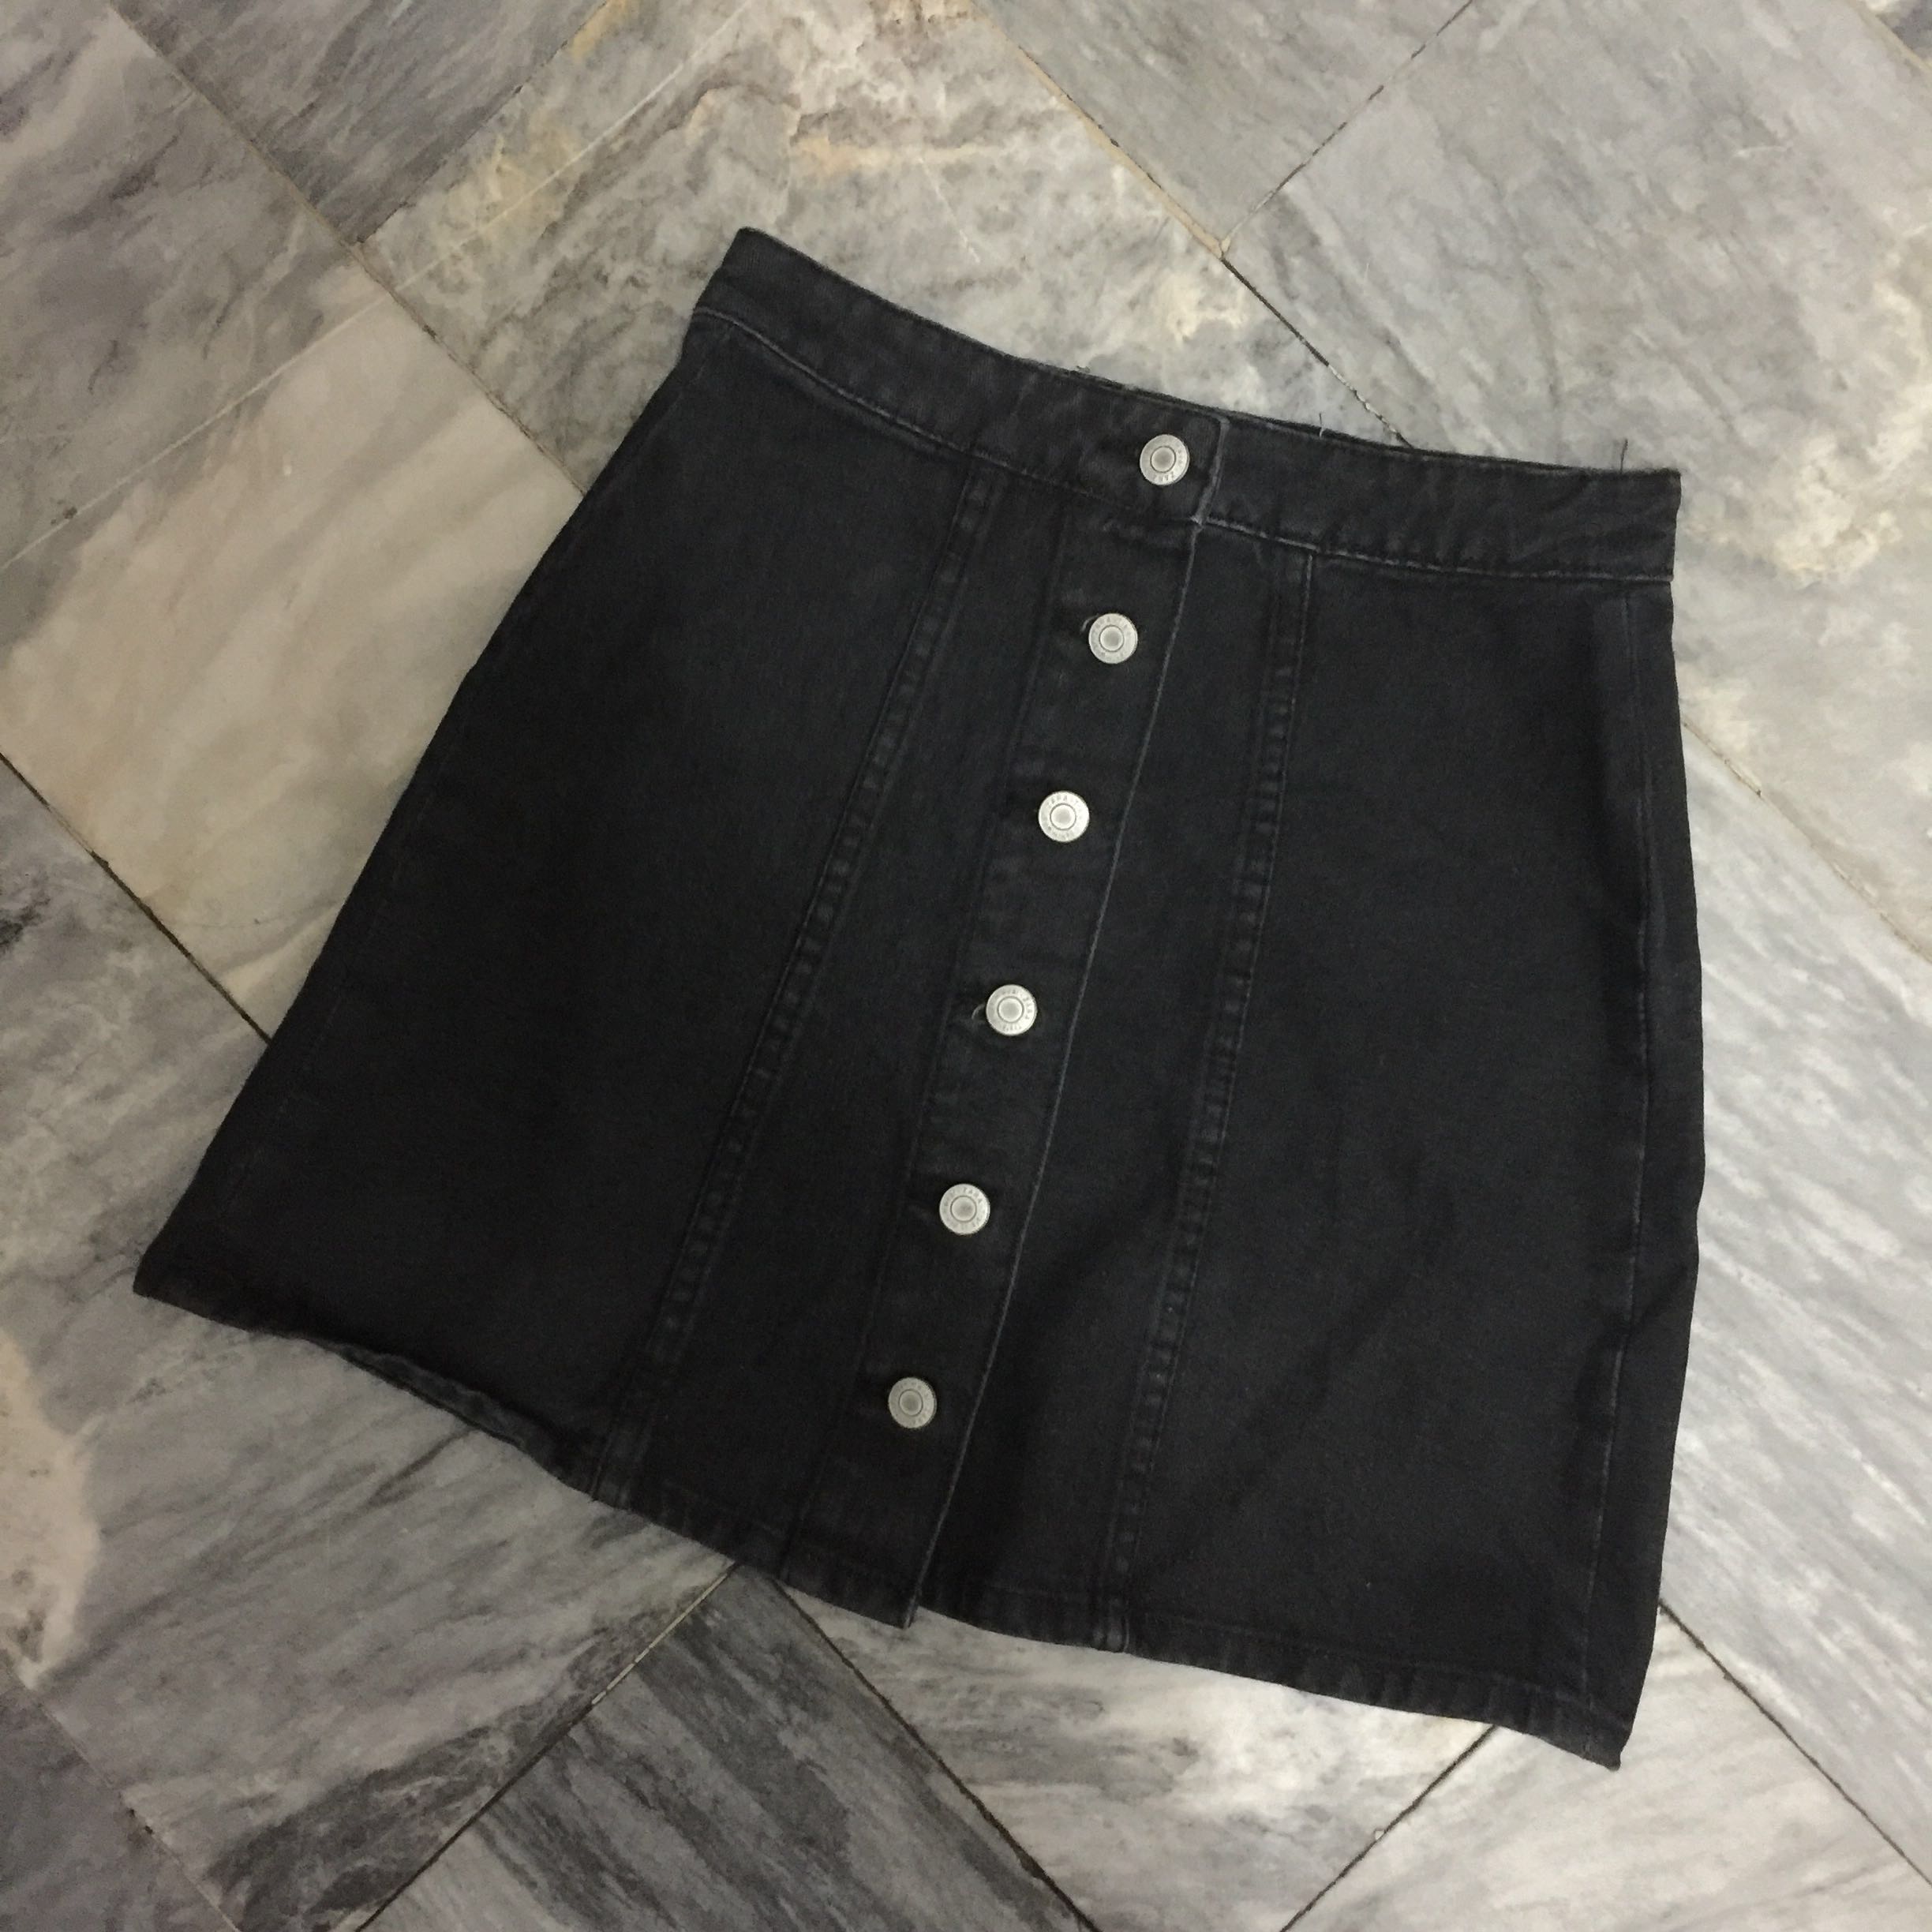 zara skirt with buttons